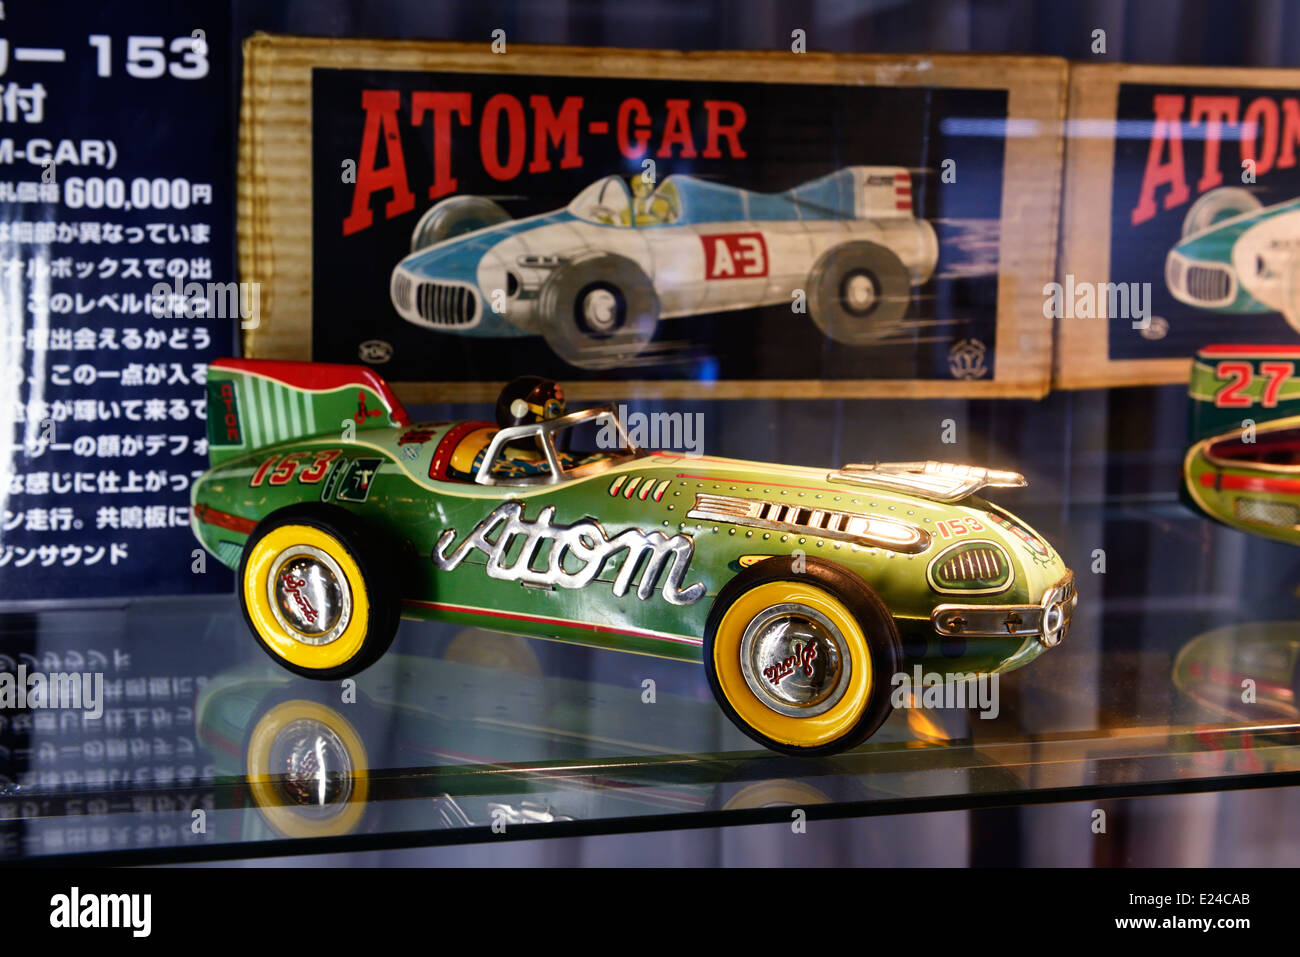 Atom coche antiguo coche de carreras de juguete coleccionable en una tienda en Tokio, Japón Foto de stock